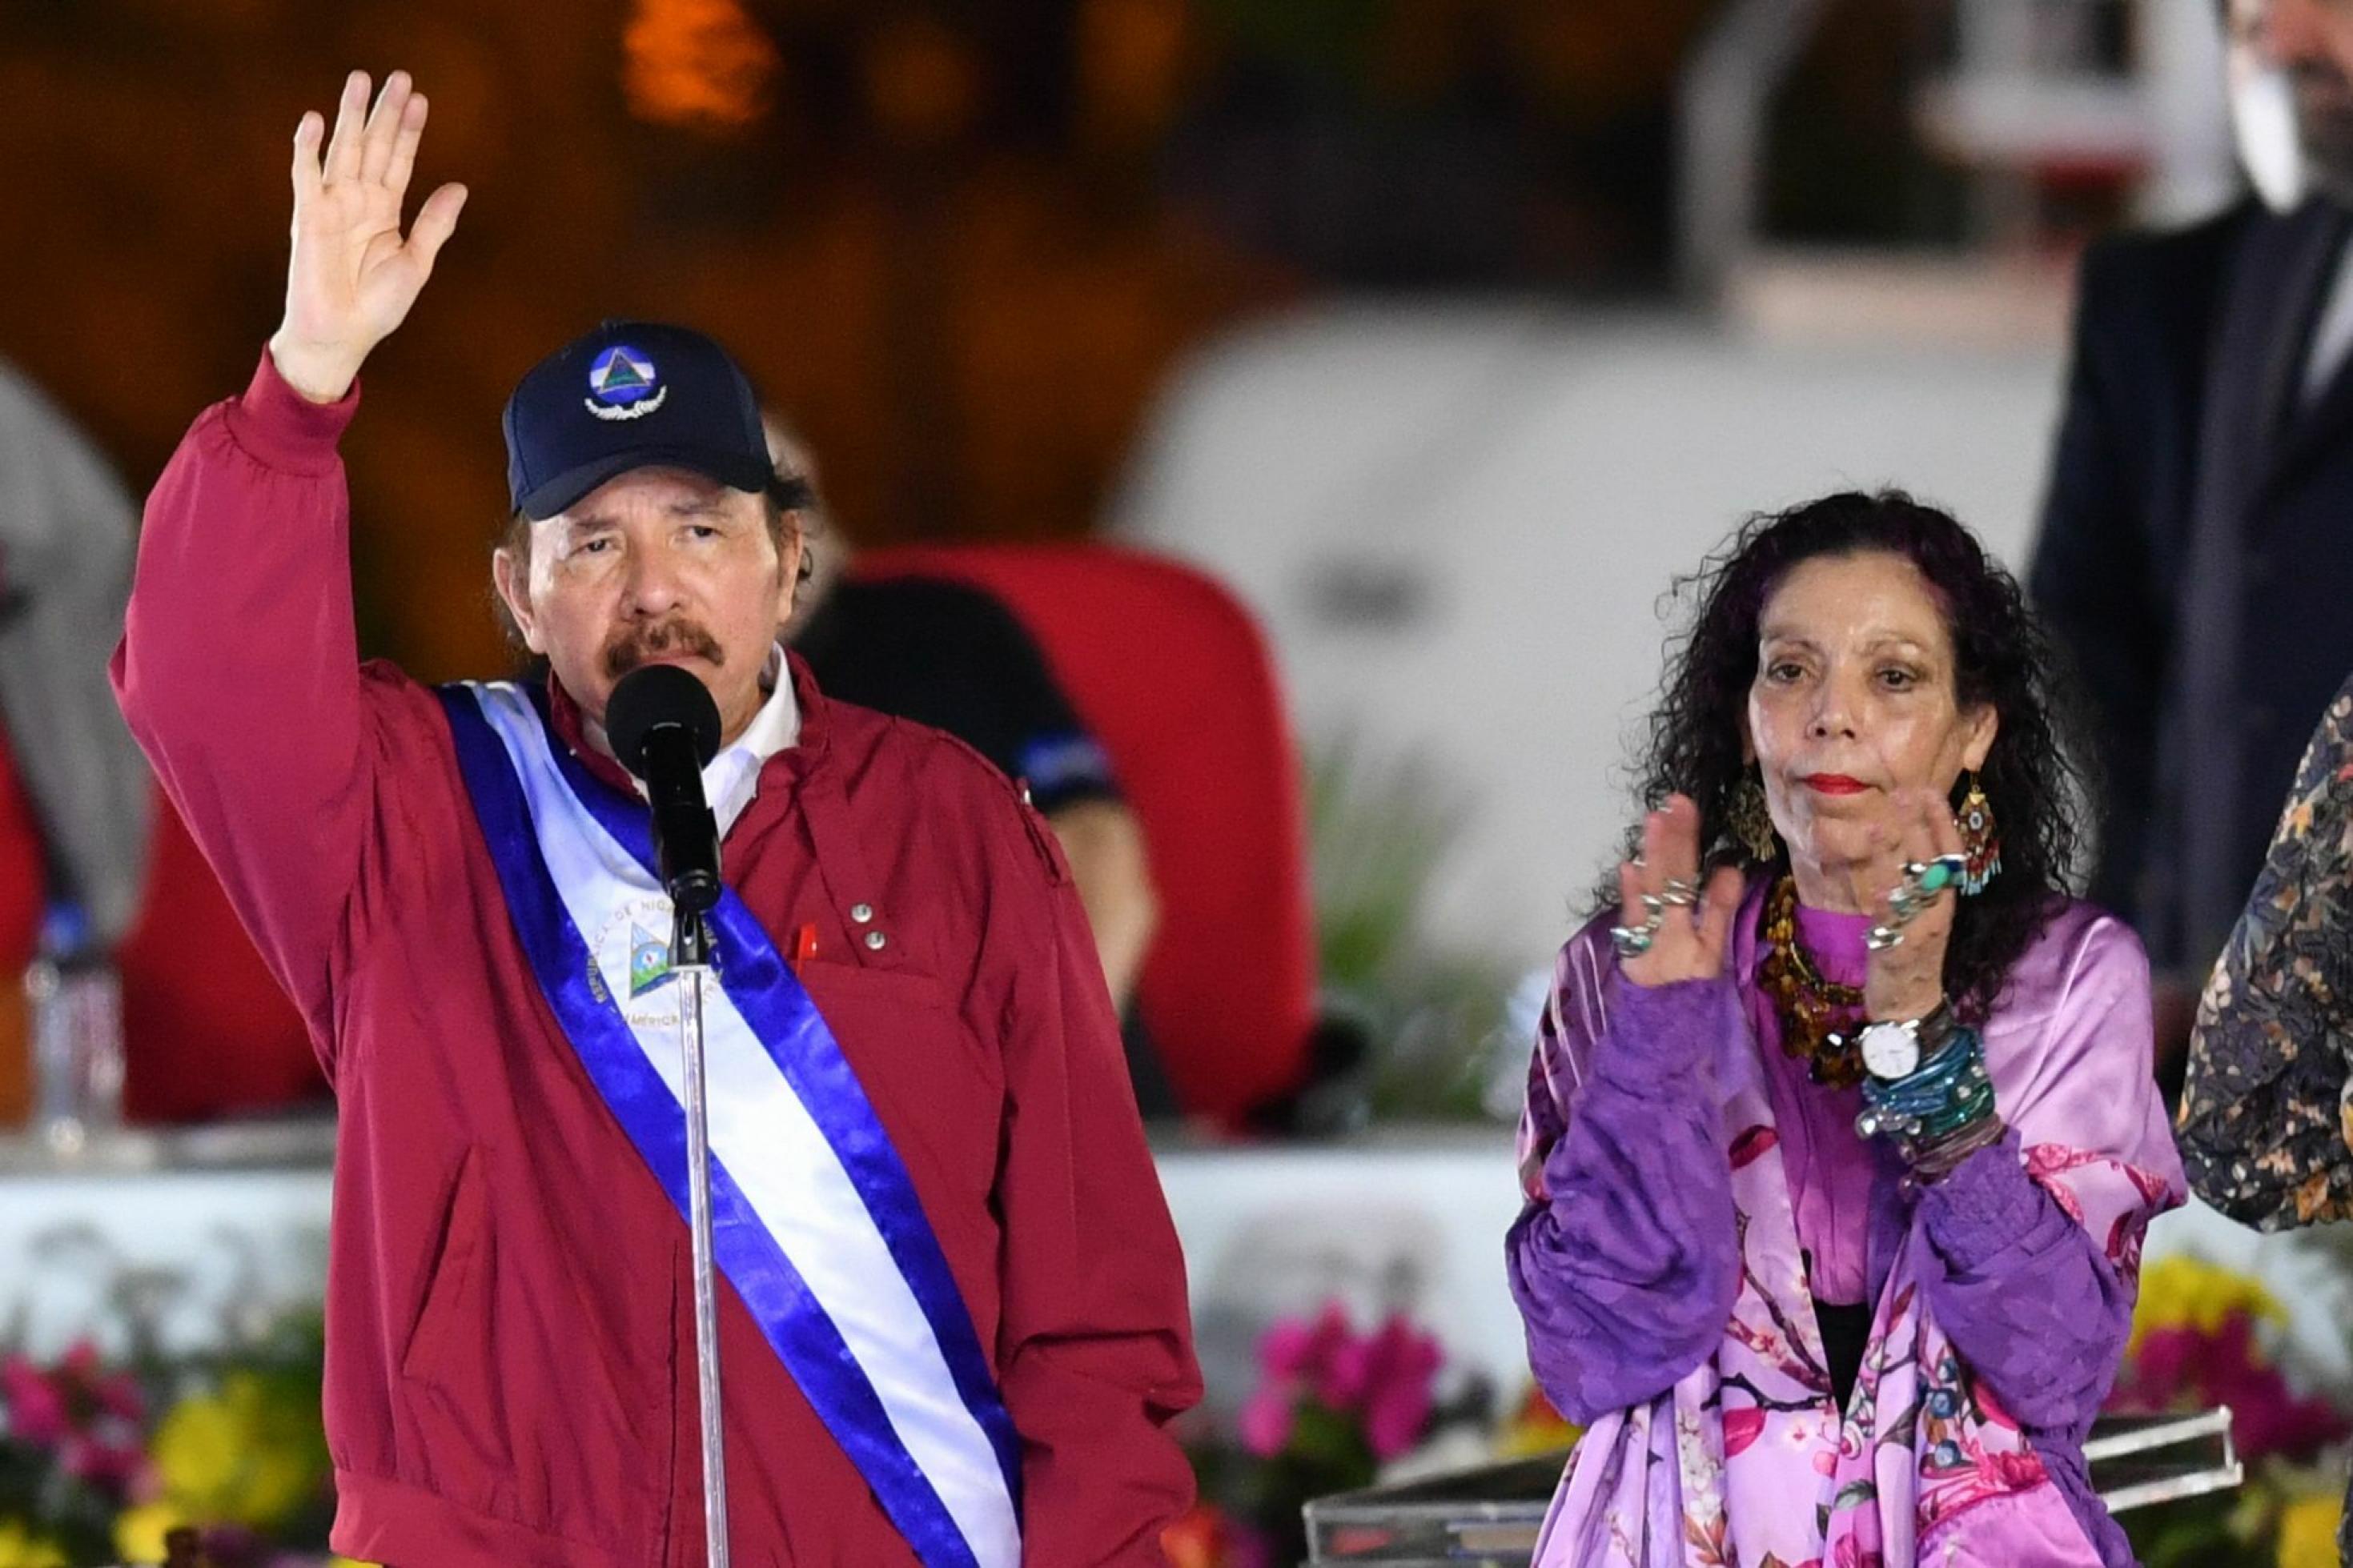 MANAGUA, Jan. 11, 2022 Vereidigungszeremonie des Nicaraguanischen Präsidenten Daniel Ortega mit Sportkappe und einem blau-weiß-blauen Banner über der Schulter grüßt, die rechte Hand erhoben, während seine Frau, die Vizepräsidentin Rosario Murillo klatscht.